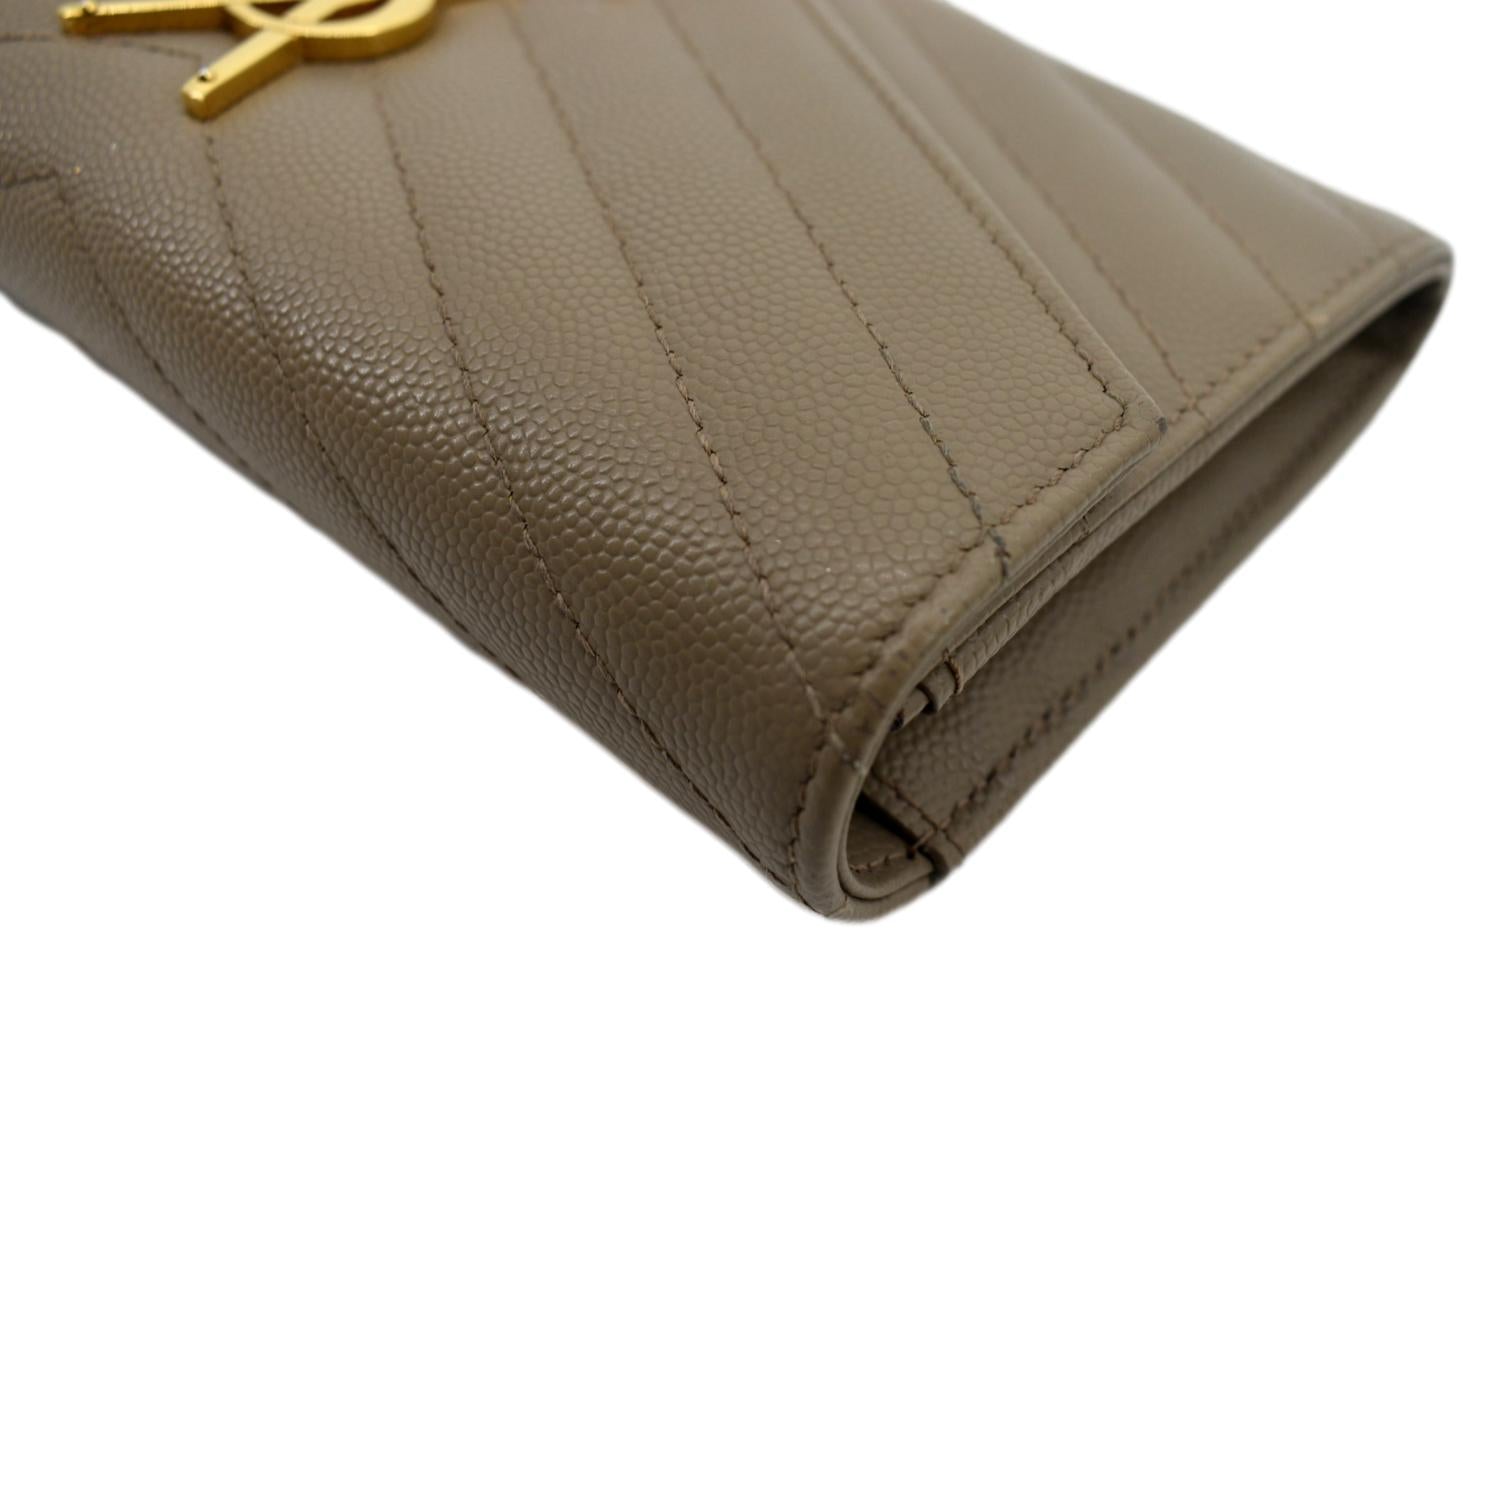 Saint Laurent Long Wallet YSL Monogram Large Flap Beige Leather w